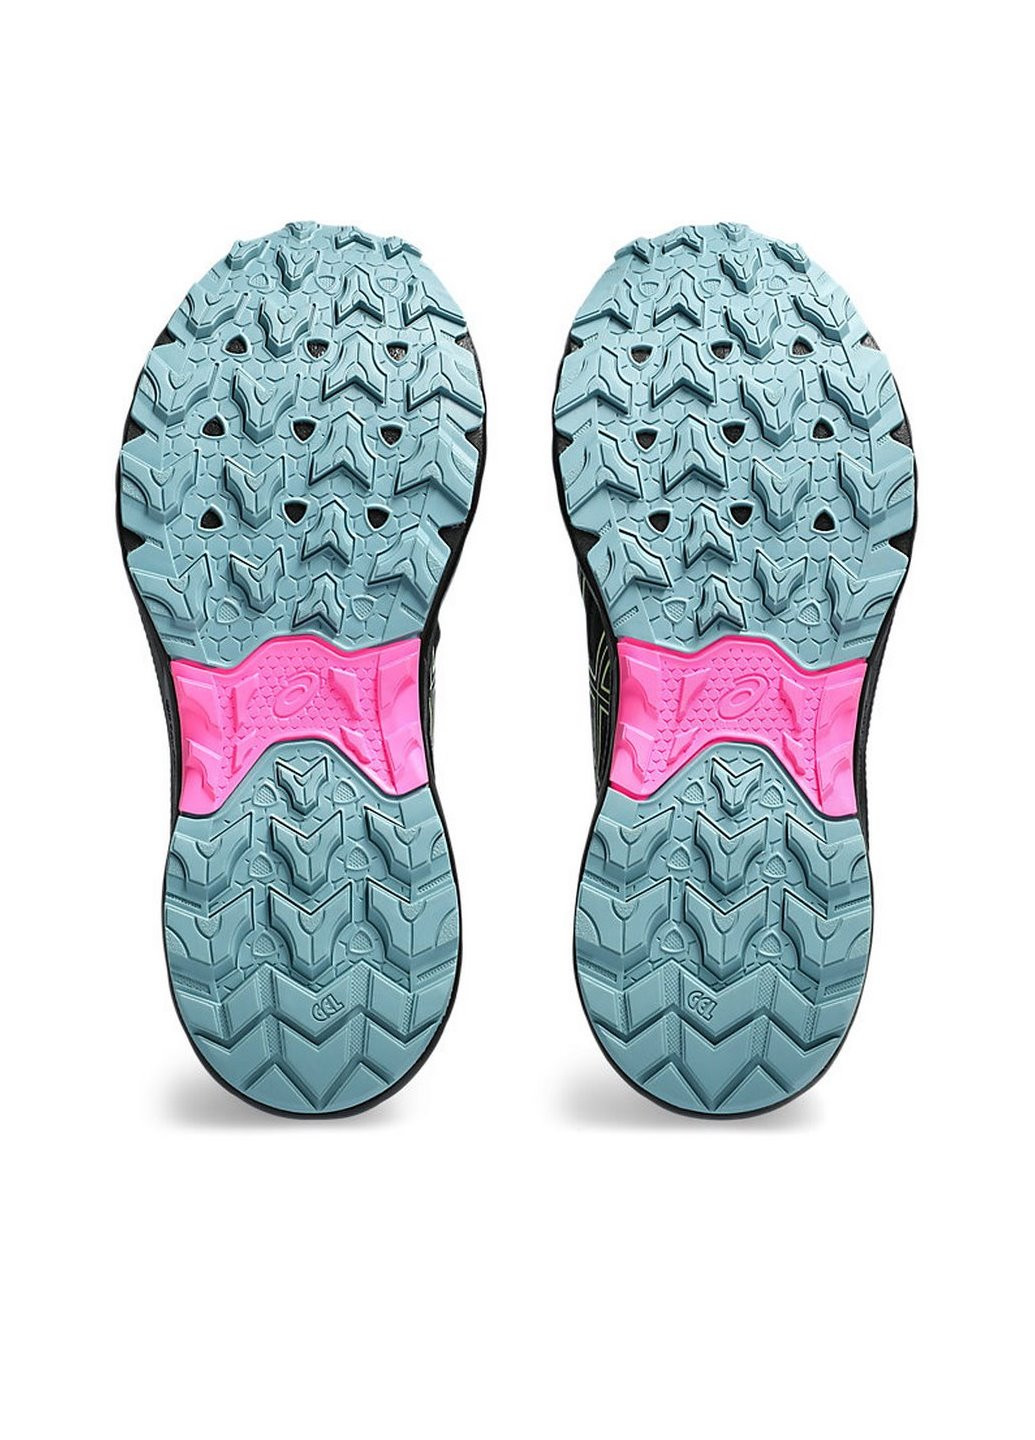 Черные демисезонные женские беговые кроссовки gel-venture 9 waterproof 1012b519-002 Asics